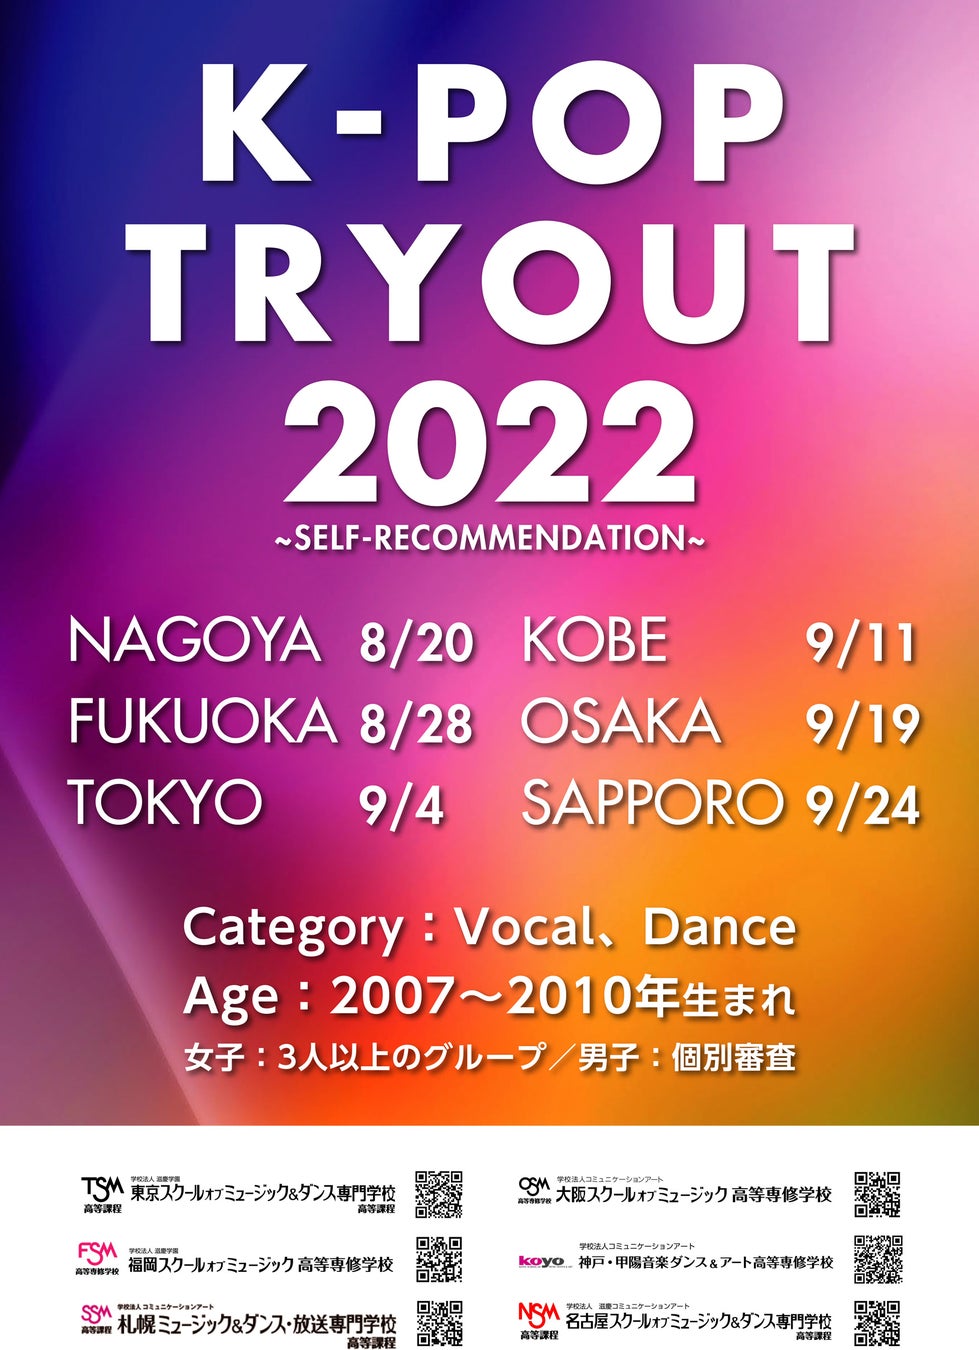 K-POP TRYOUT 2022 を開催【中学生のための自己推薦型イベント】のサブ画像1